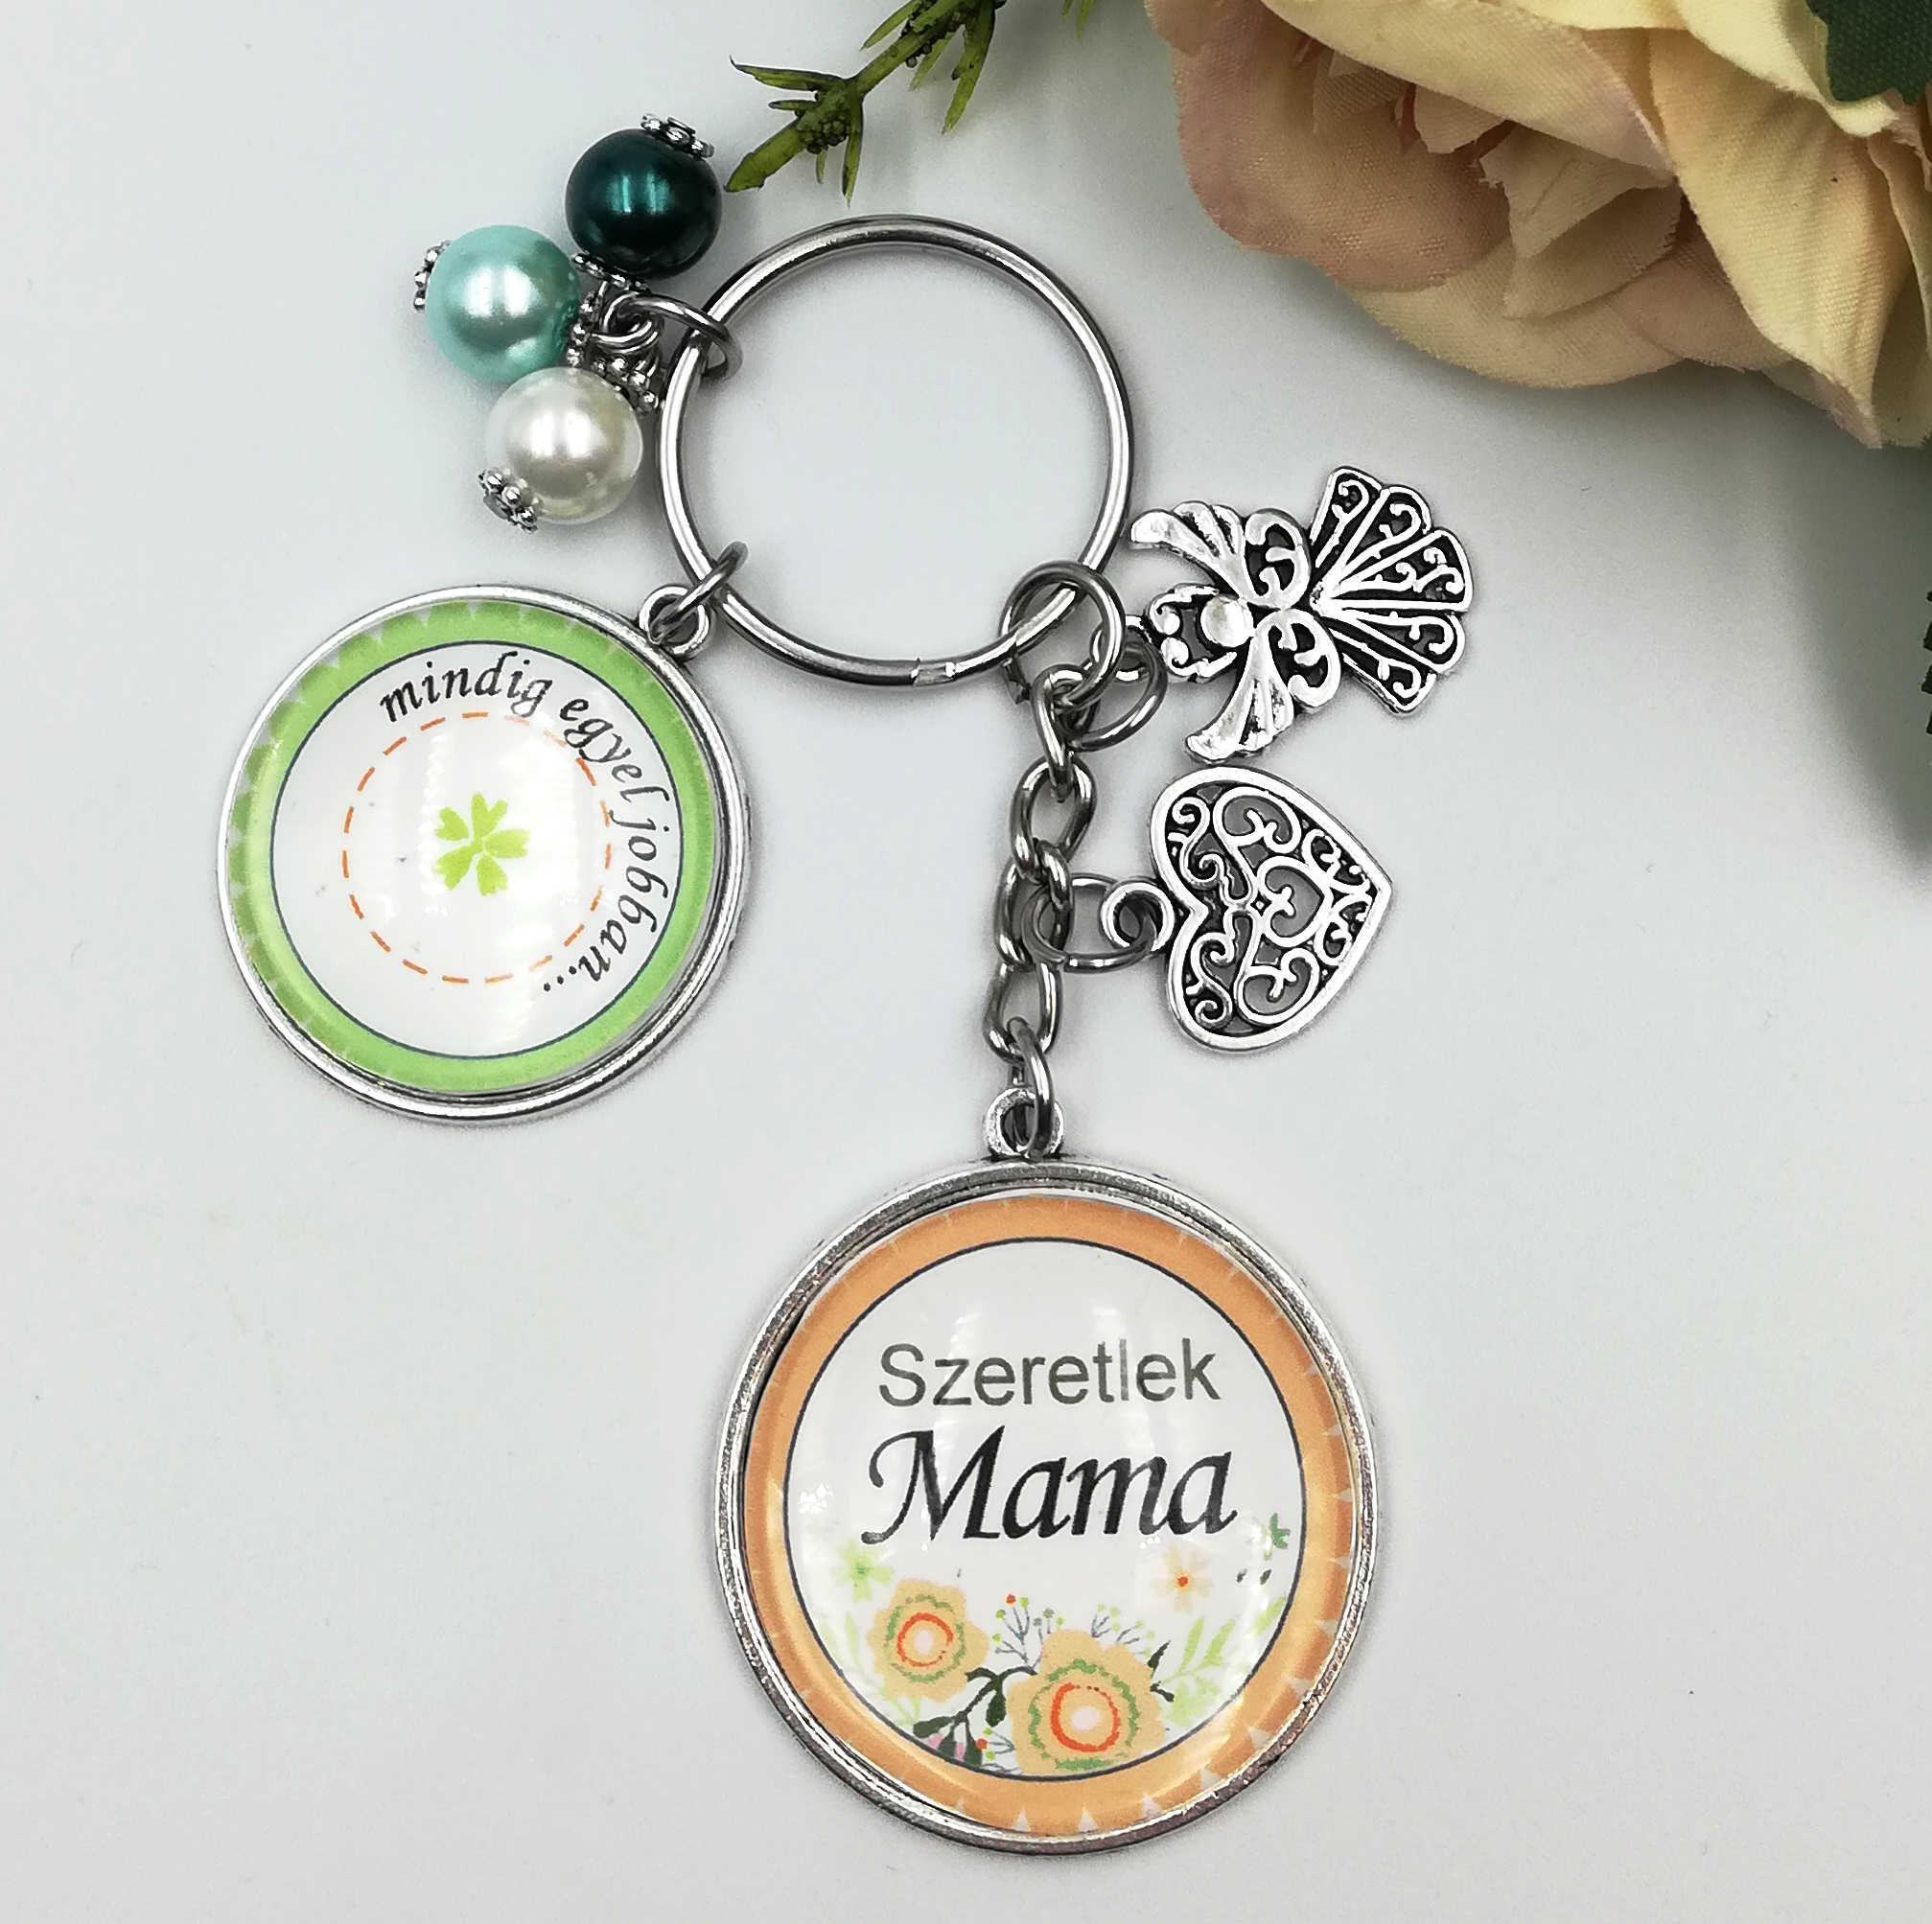 Üveglencsés kulcstartó - "Szeretlek Mama" felirattal és saját szöveggel